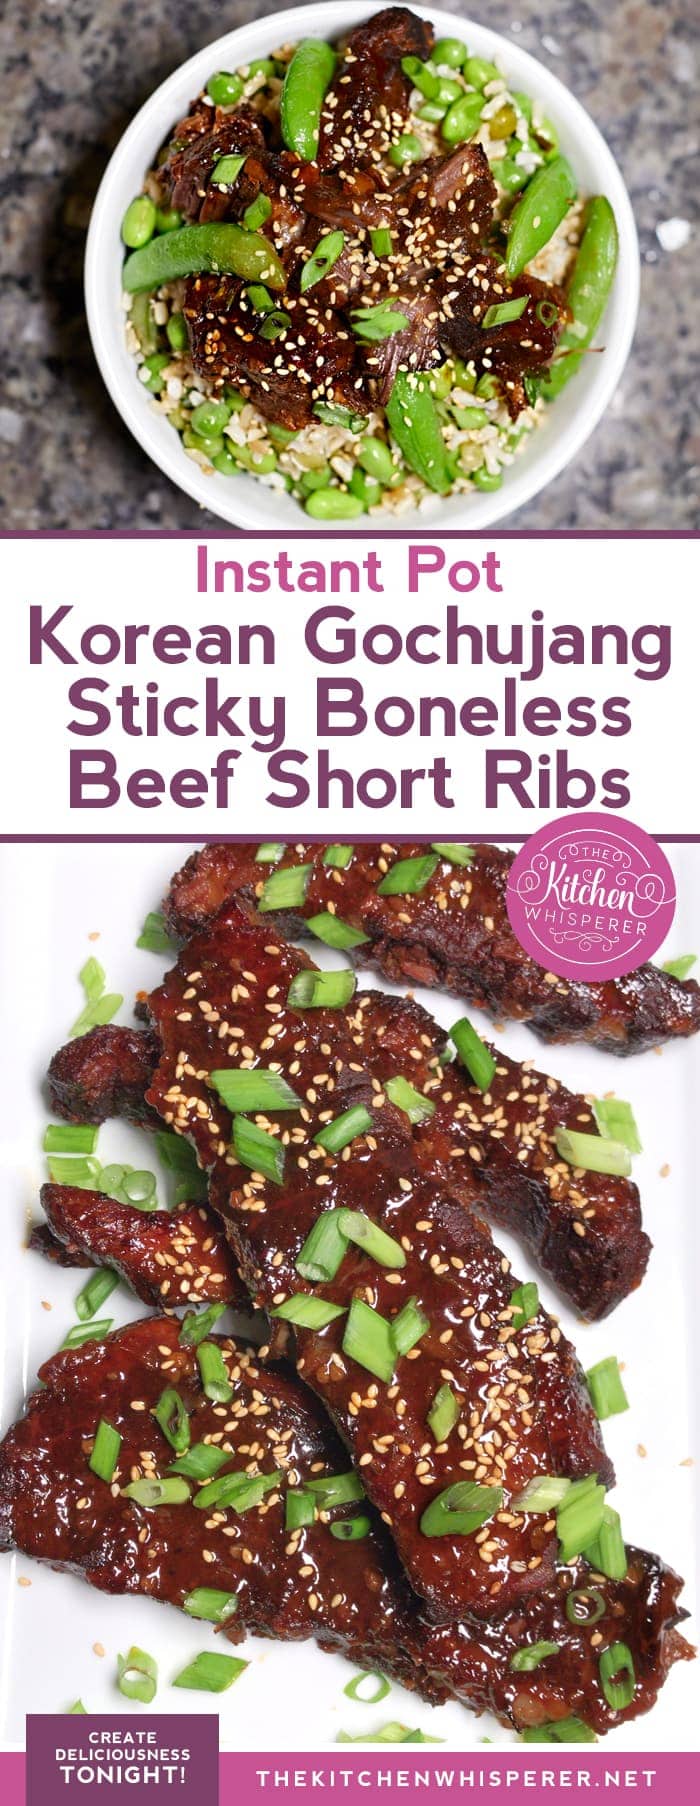 nstant Pot Korean Gochujang Sticky Boneless Beef